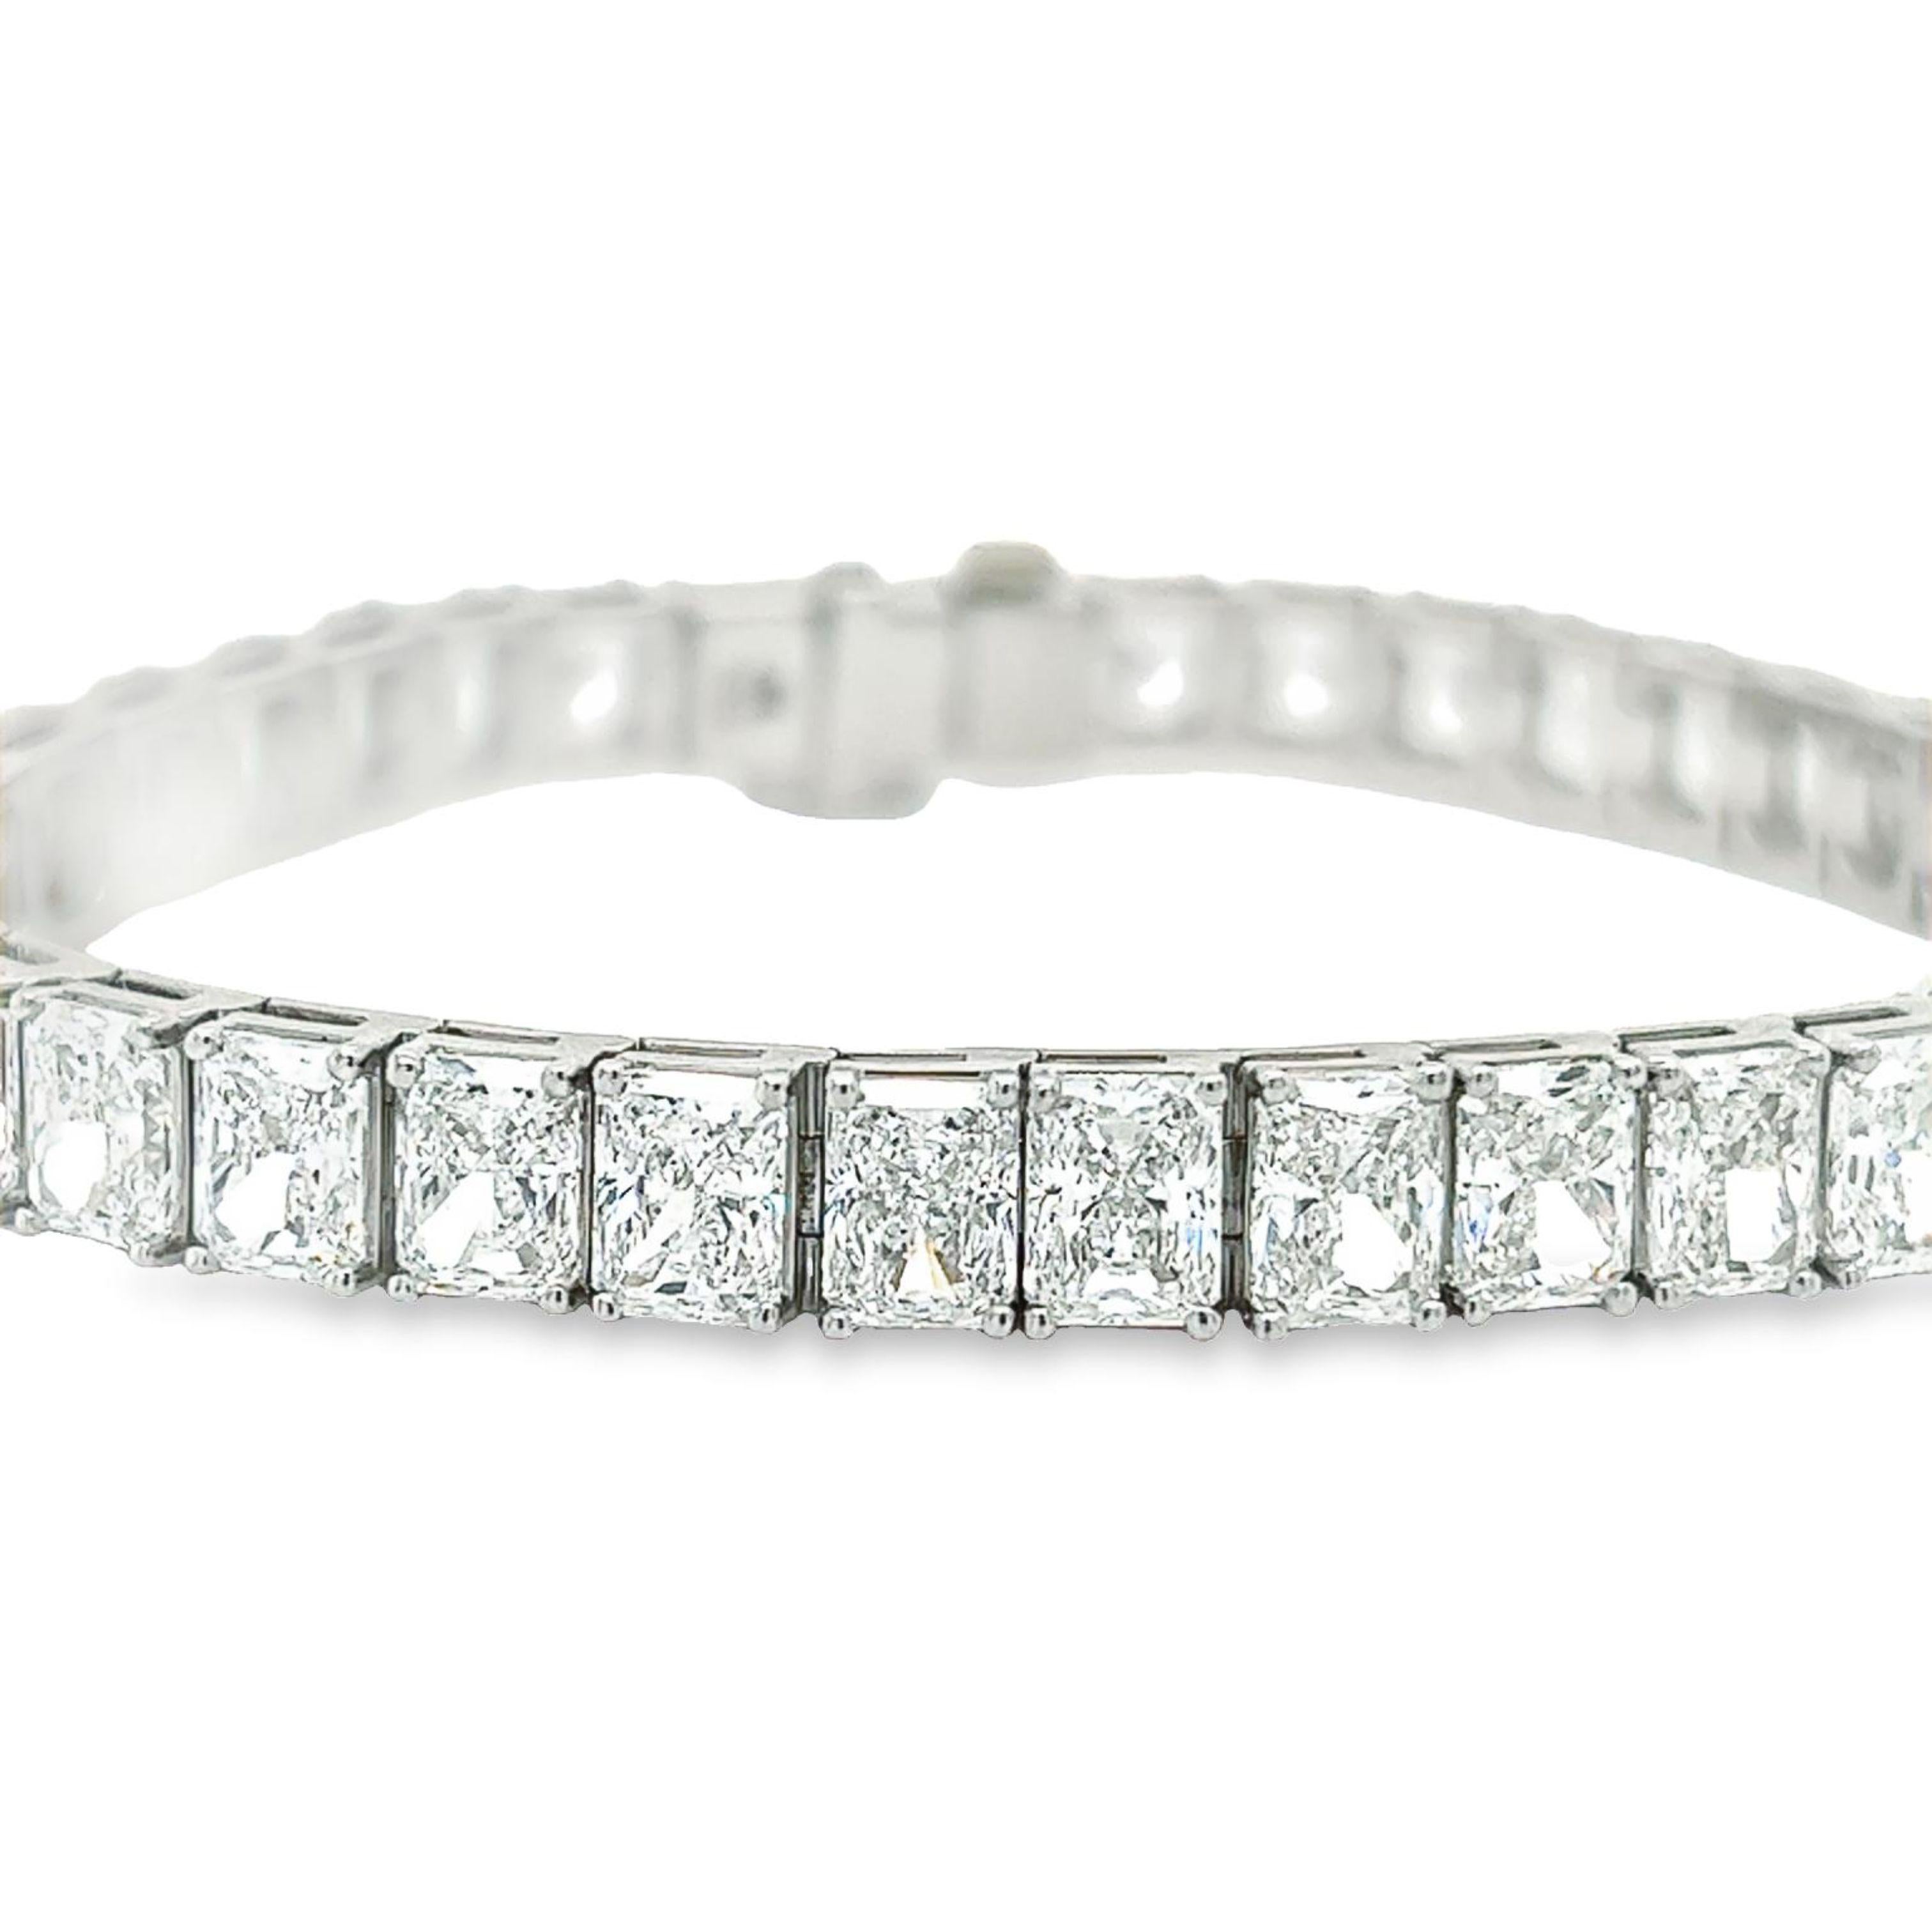 Rosenberg Diamonds and Co. 26,74 Karat Gesamtgewicht Radiant Form 7 Zoll Diamant-Tennis-Armband in Platin gesetzt. Diese schöne gerade Linie Armband besteht aus .70 Karat, D-G in Farbe VVS1-VS2 in Klarheit. Alle 38 Steine sind perfekt aufeinander